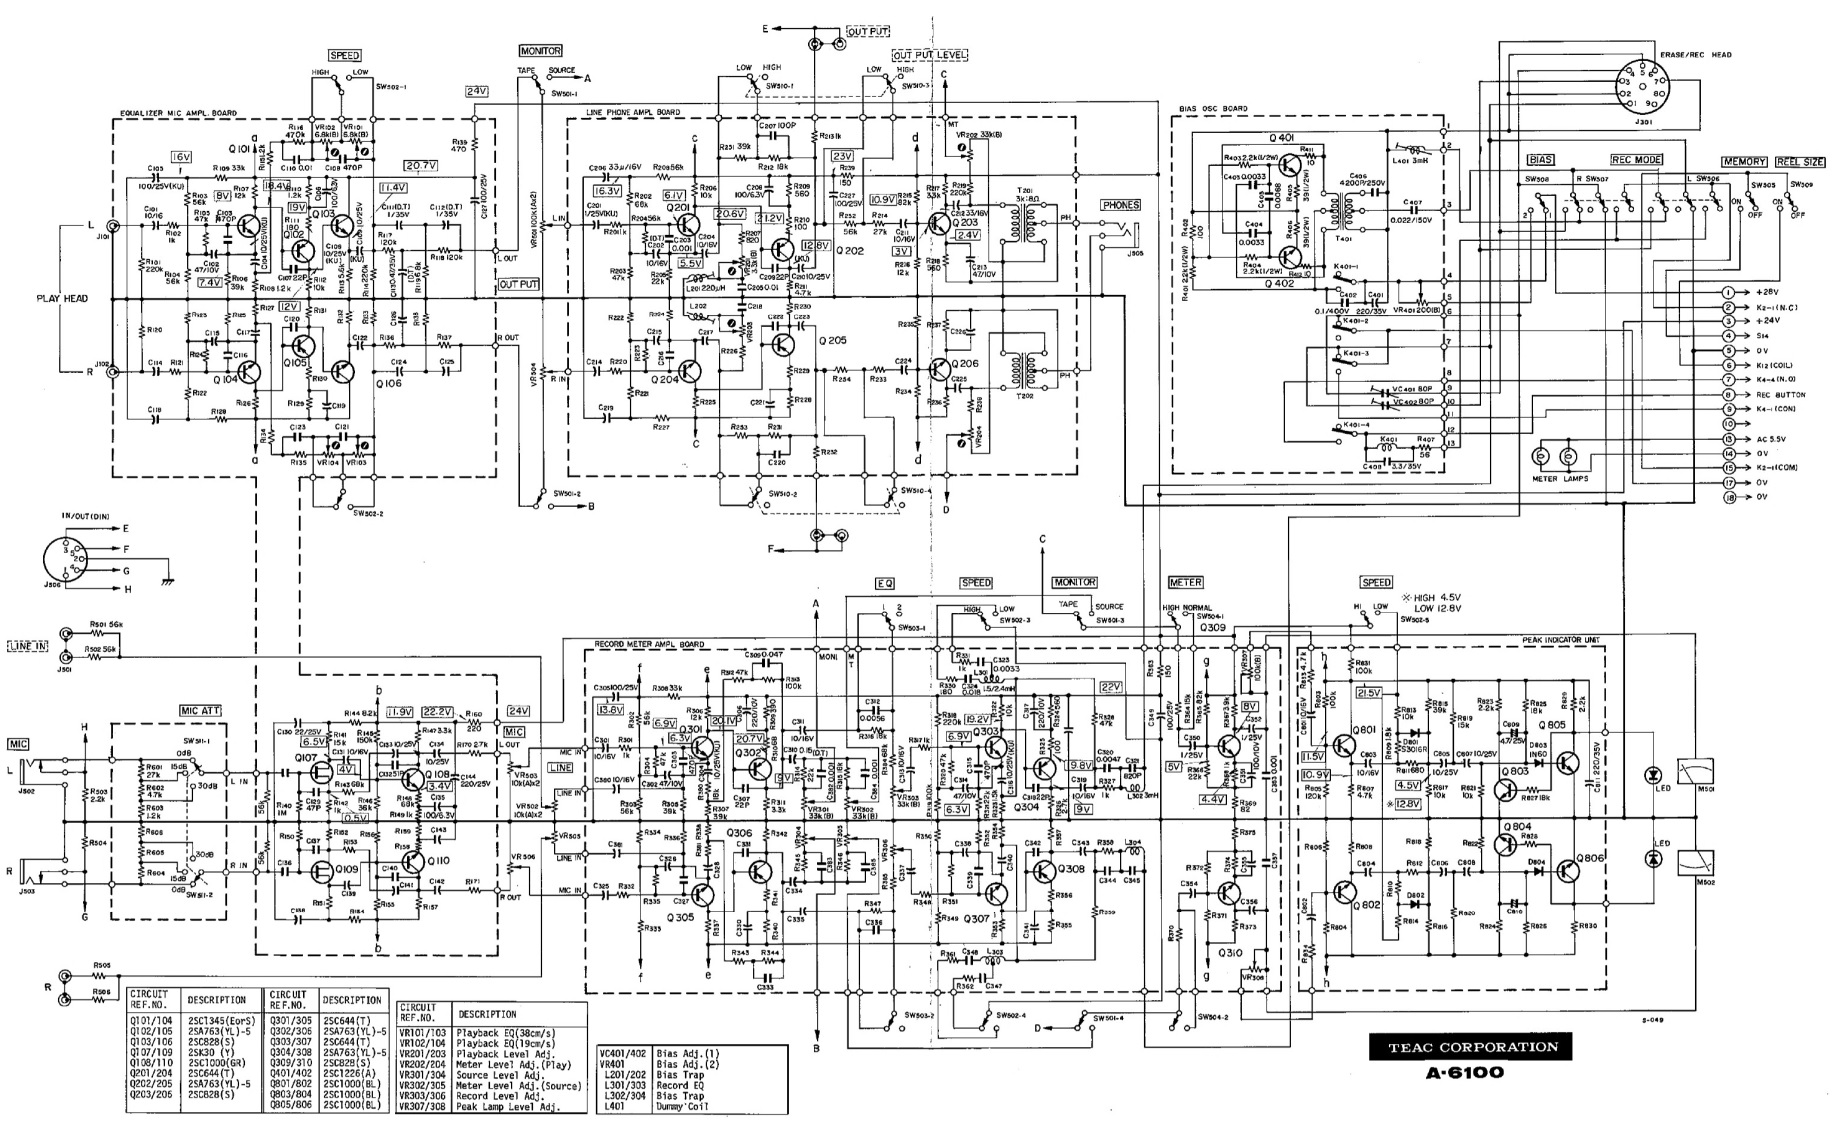 Master Electronics Repair !: PANASONIC RX CS720 AND TEAC A 6100 CIRCUIT